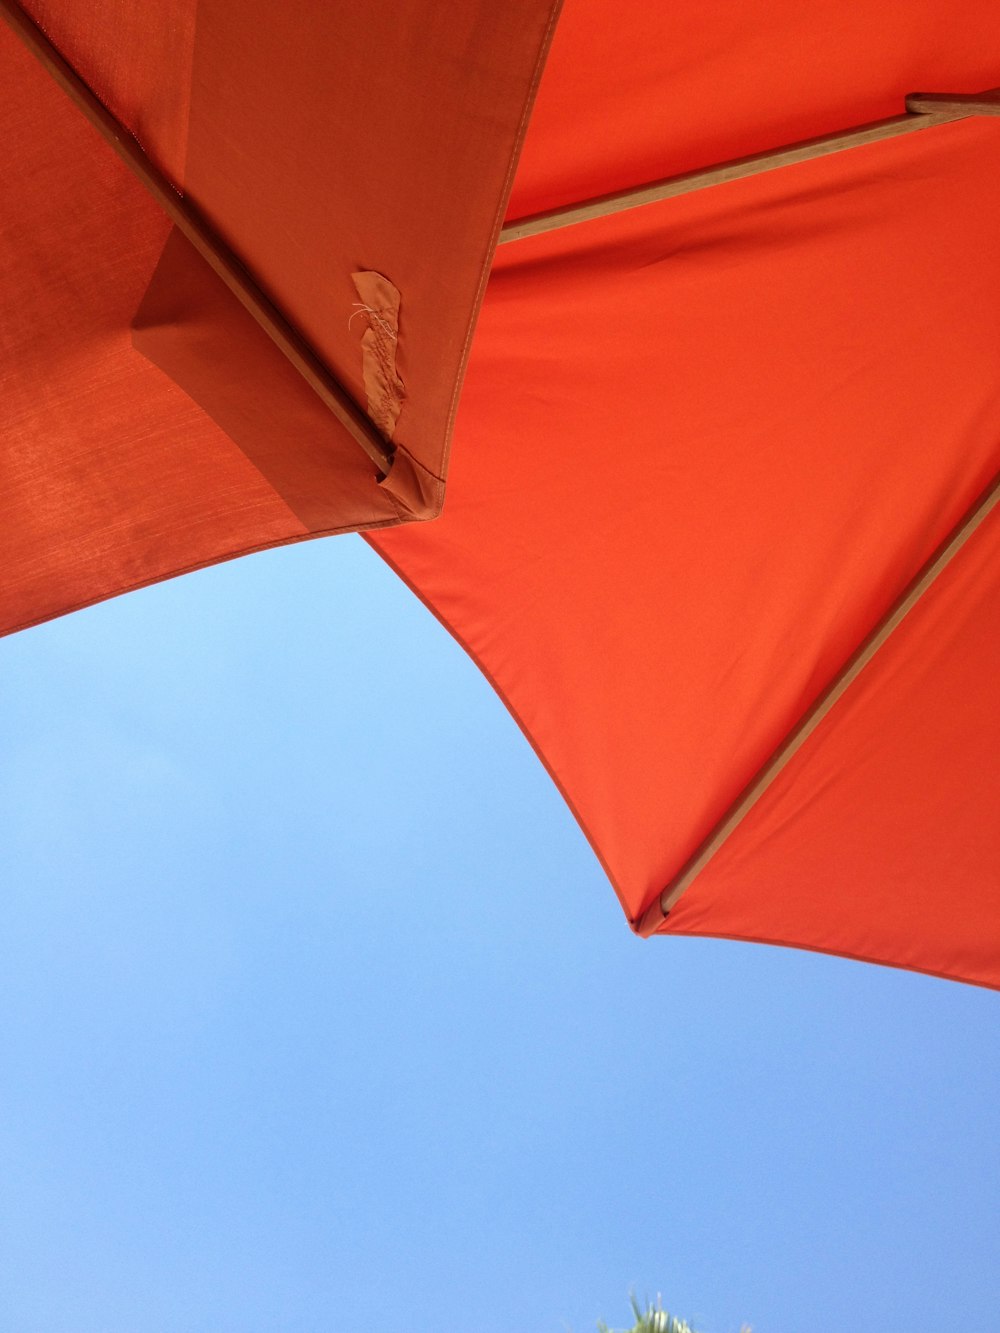 낮 동안 푸른 하늘 아래 빨간 우산